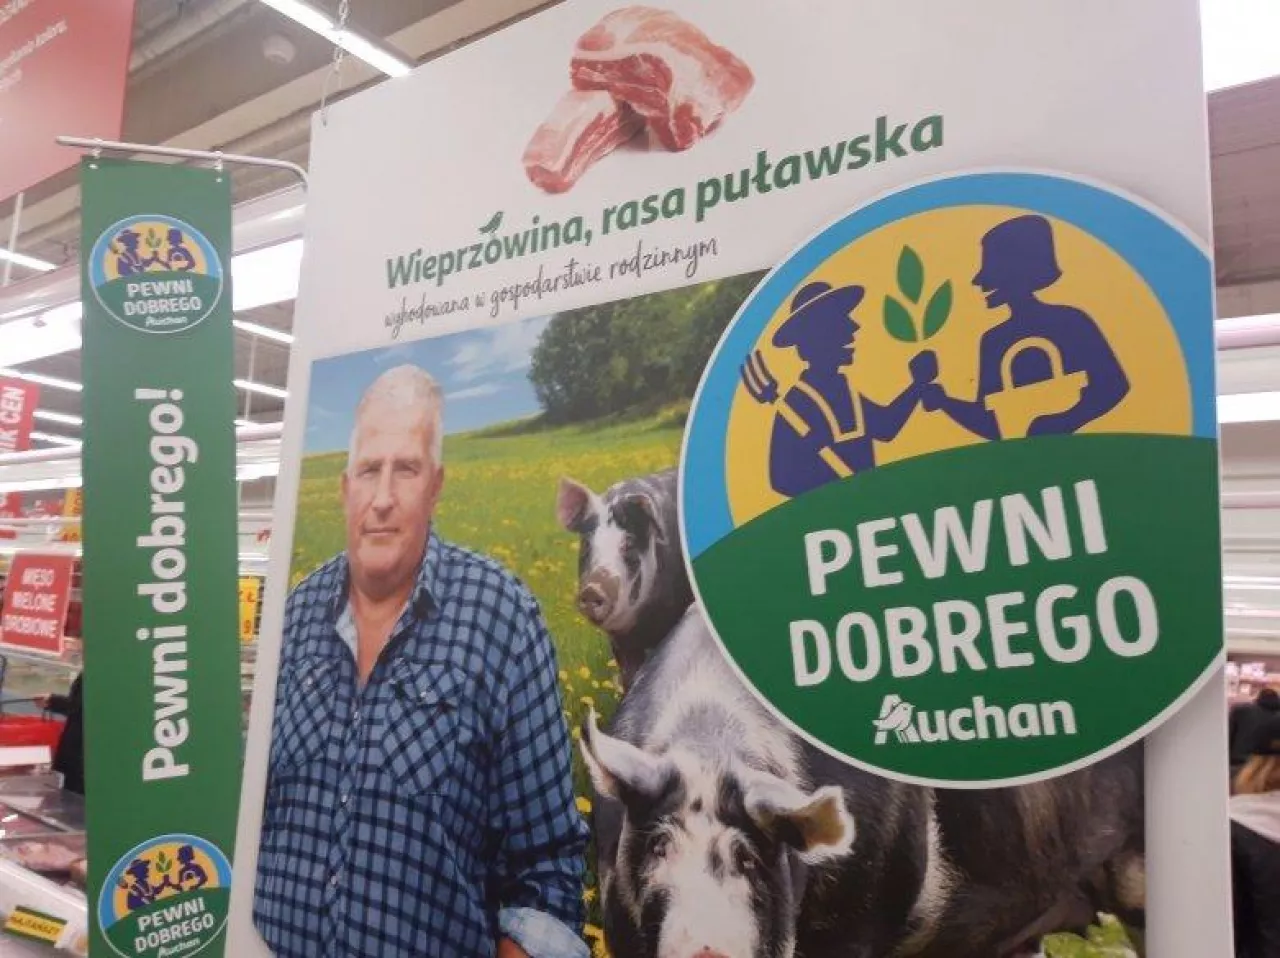 Produkty marki Pewni Dobrego (fot. wiadomoscihandlowe.pl)